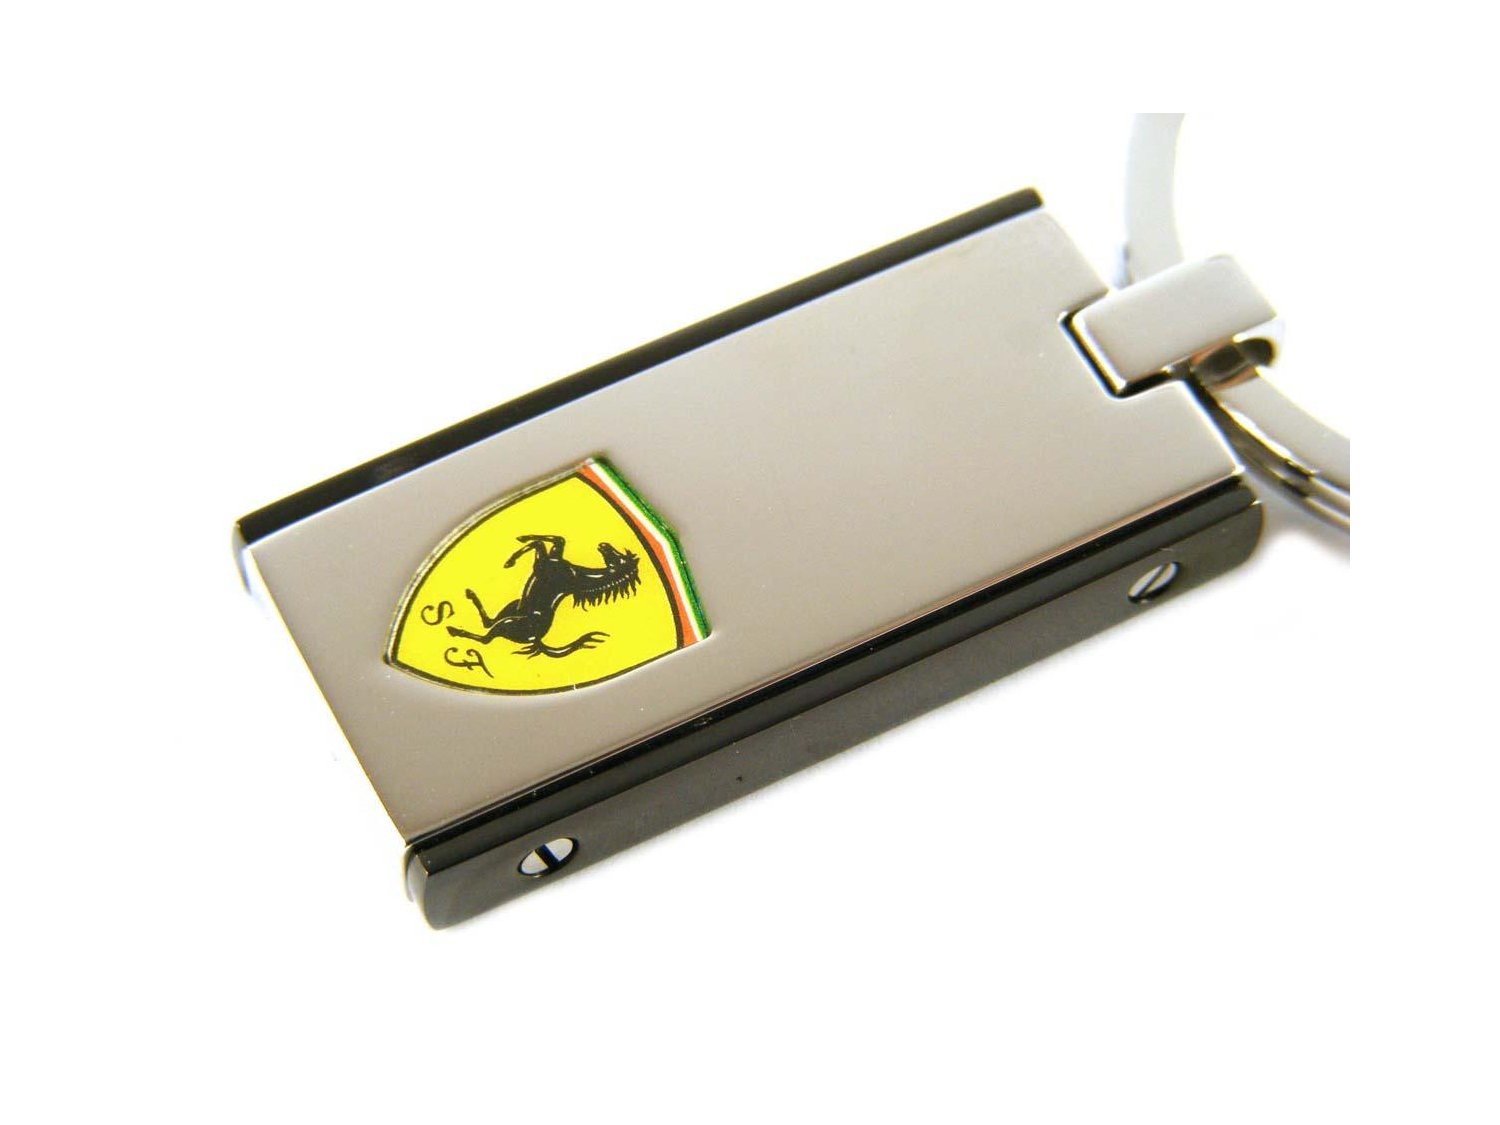 Porte-clés Ferrari 226601